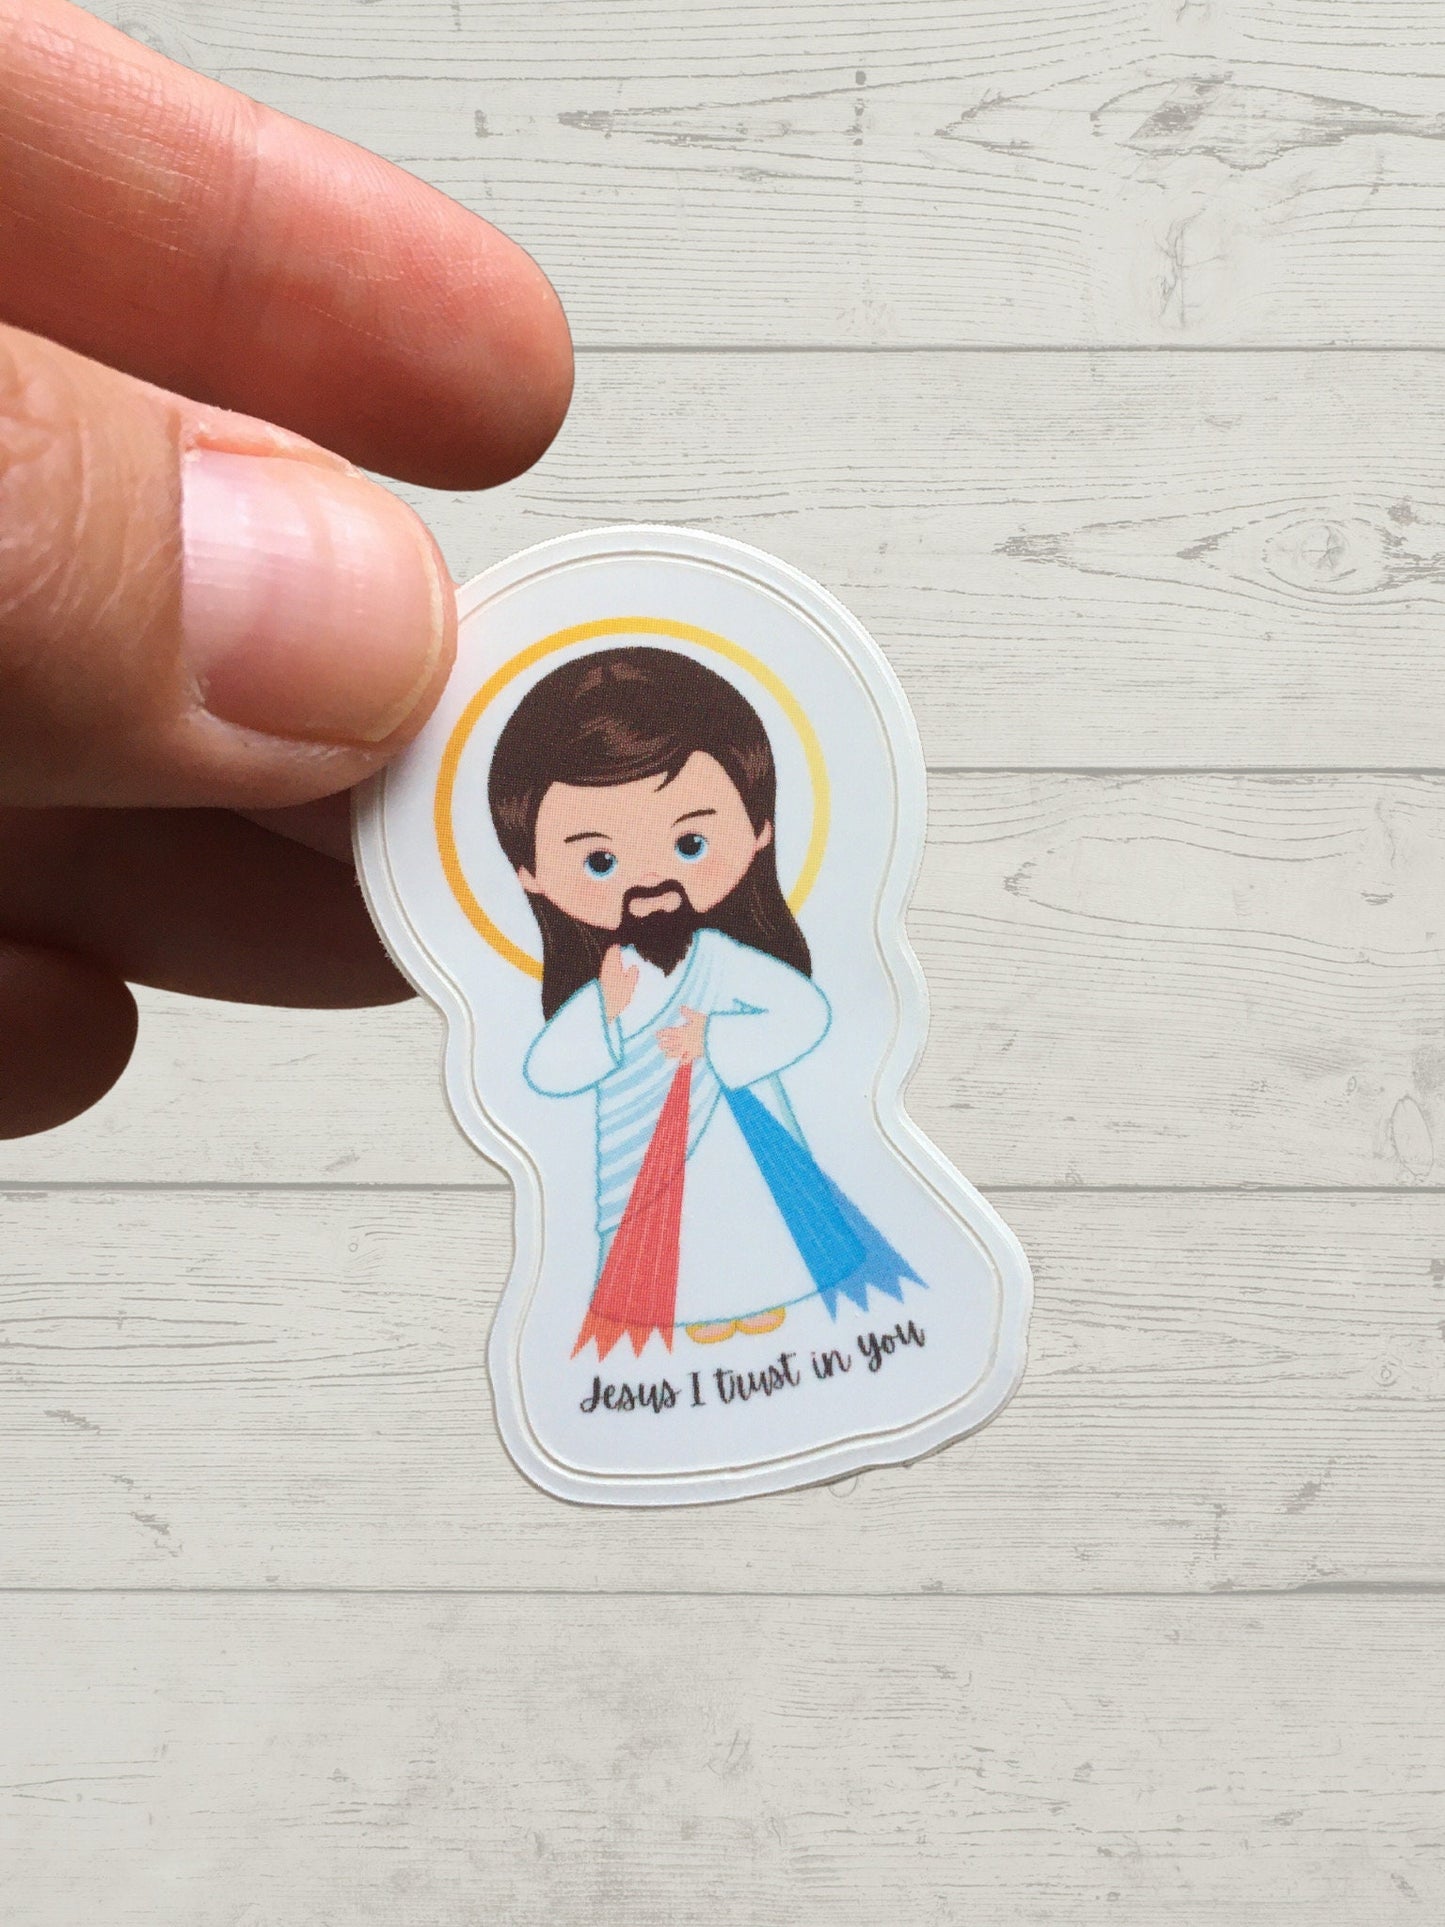 Divine Mercy Sticker